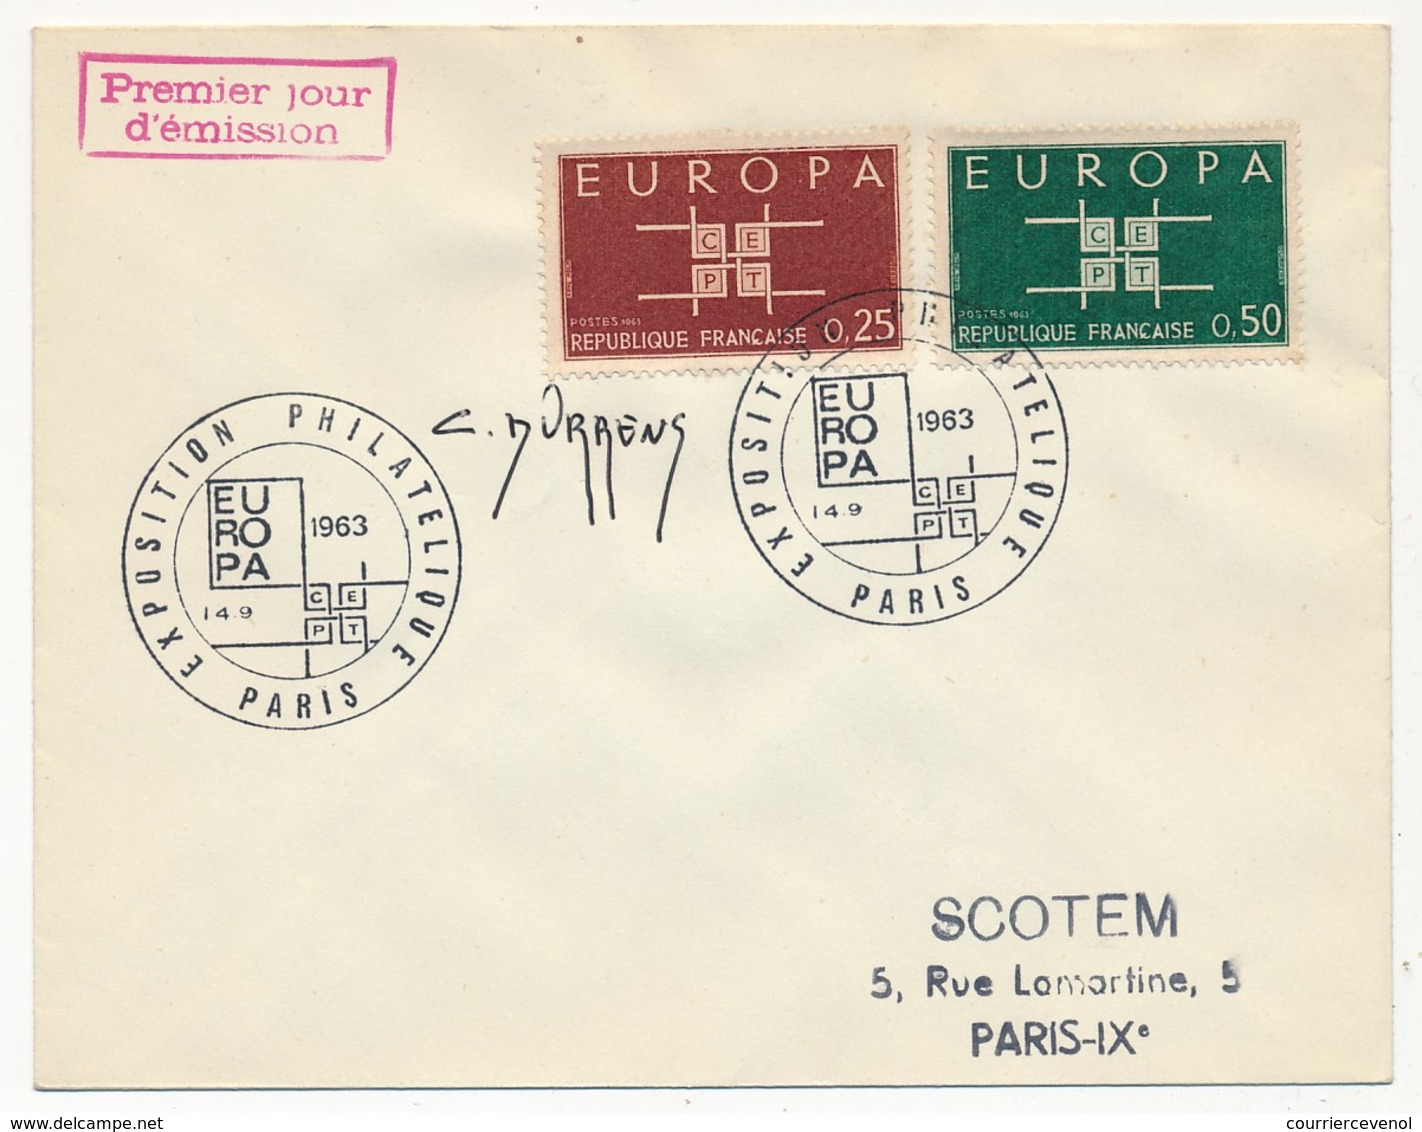 Enveloppe Scotem - Europa 1963 Obl. Illustrée Expo Philatélique Paris 1963 Signature C. DURRENS - Lettres & Documents